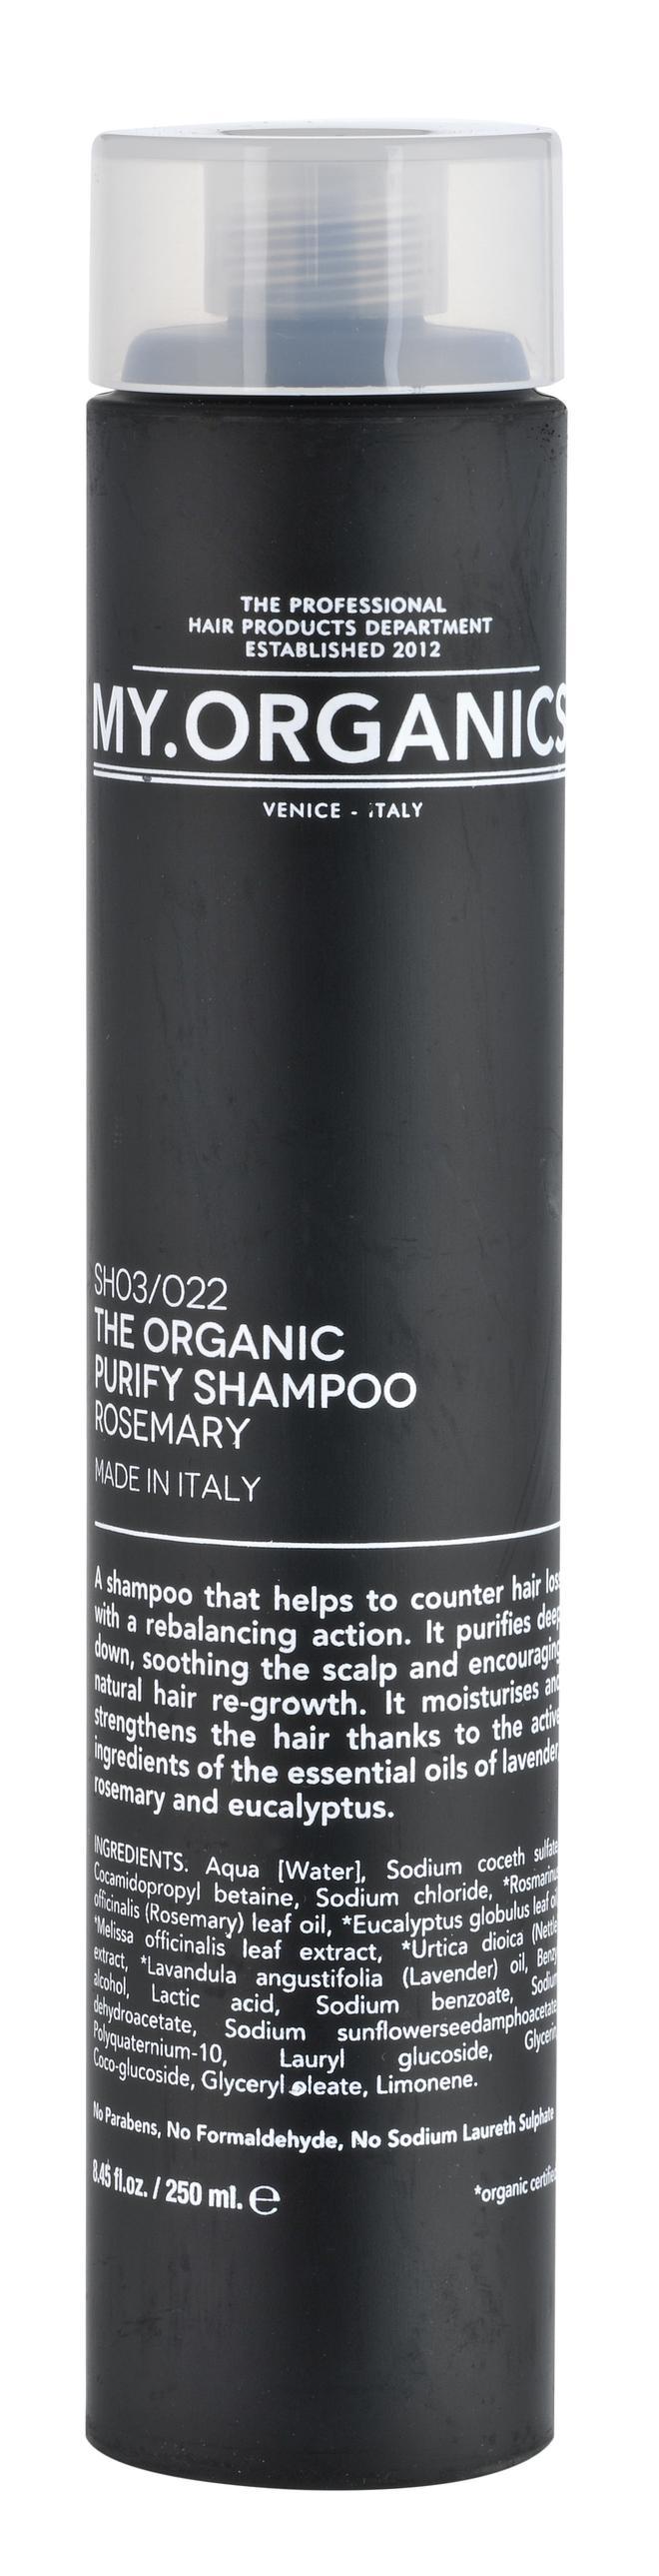 The Organic Purify Shampoo